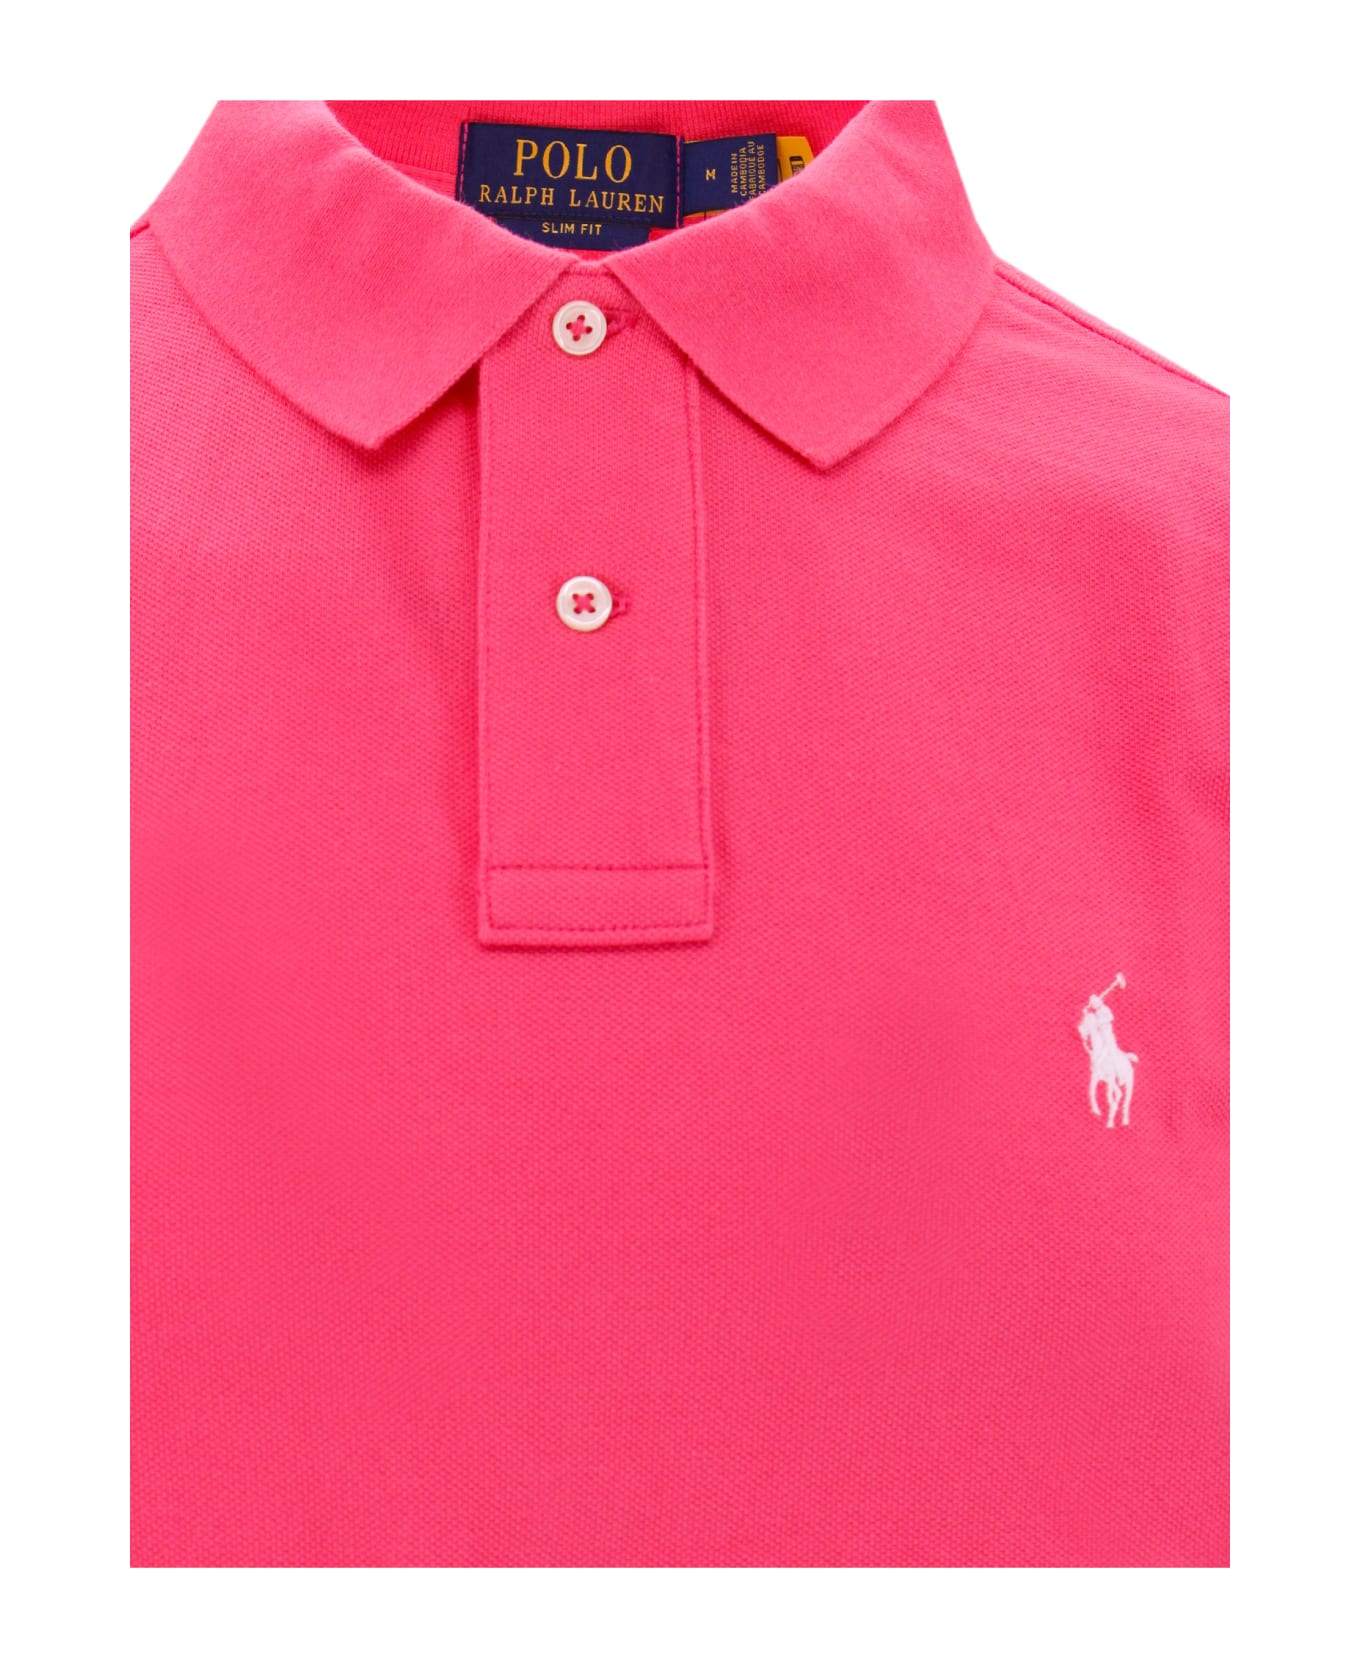 Polo Ralph Lauren Polo Shirt - Hot pink